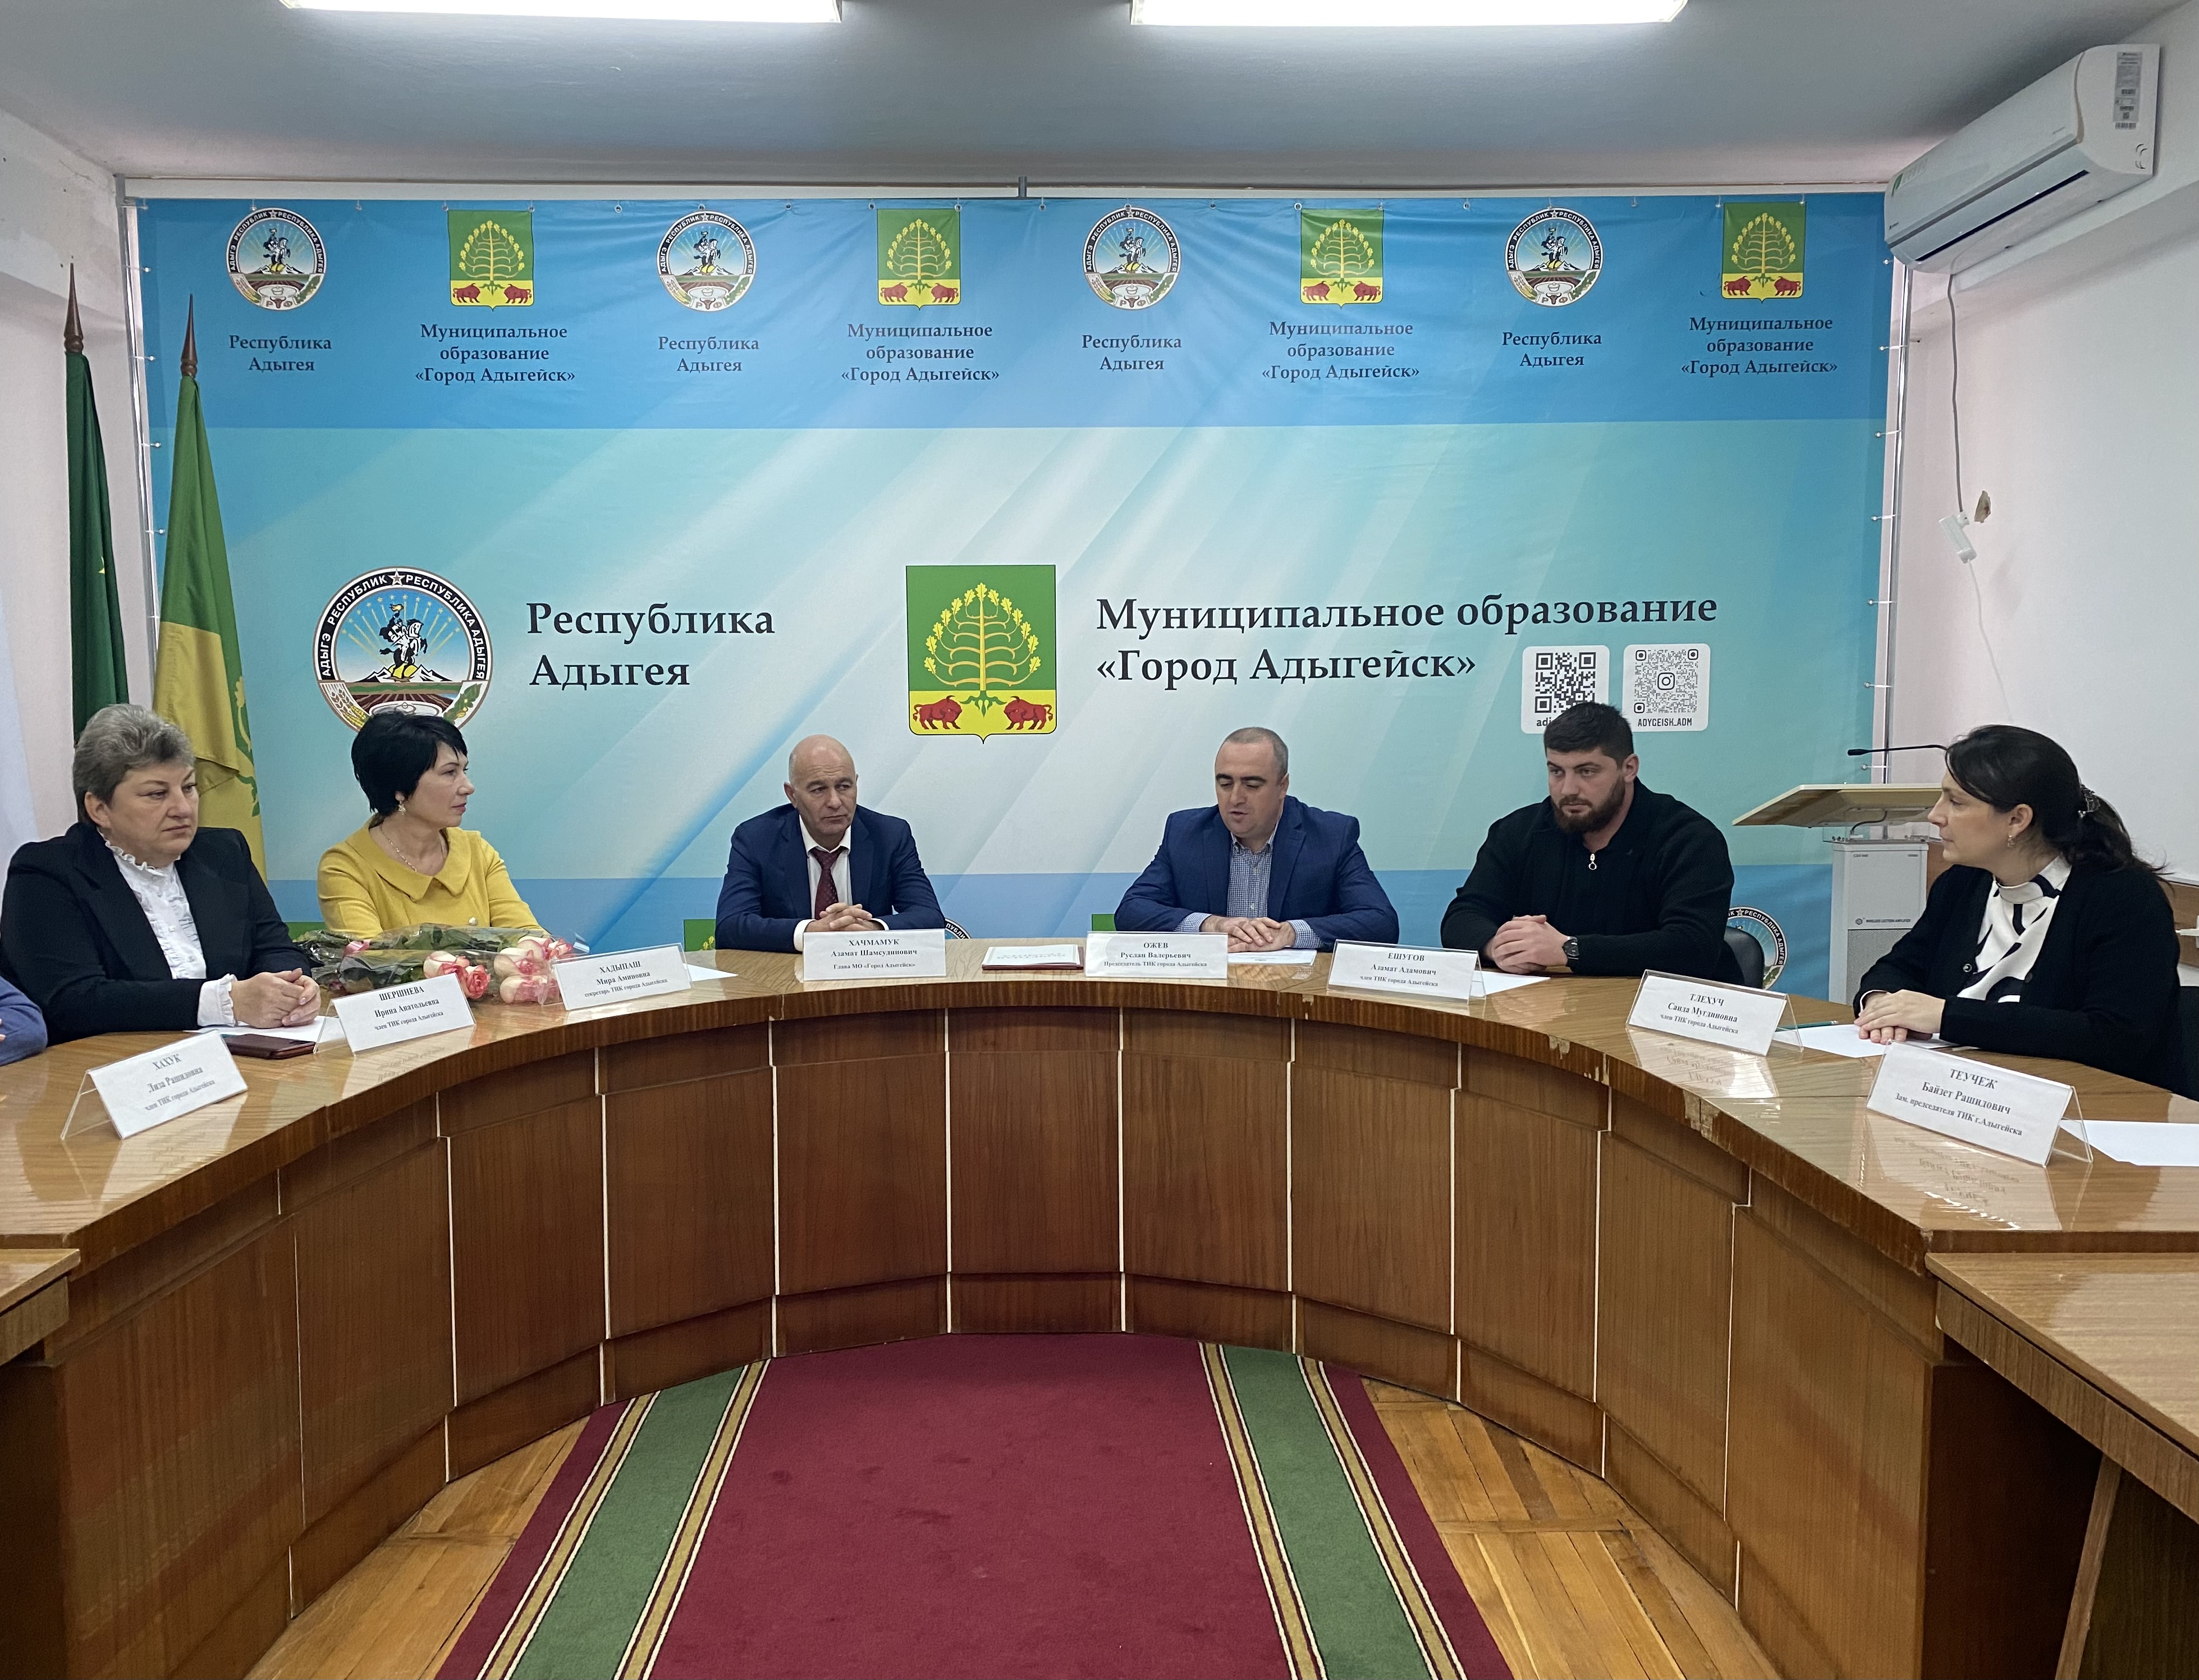 В зале Администрации МО "Город Адыгейск" прошло торжественное заседание Территориальной избирательной комиссии г. Адыгейск